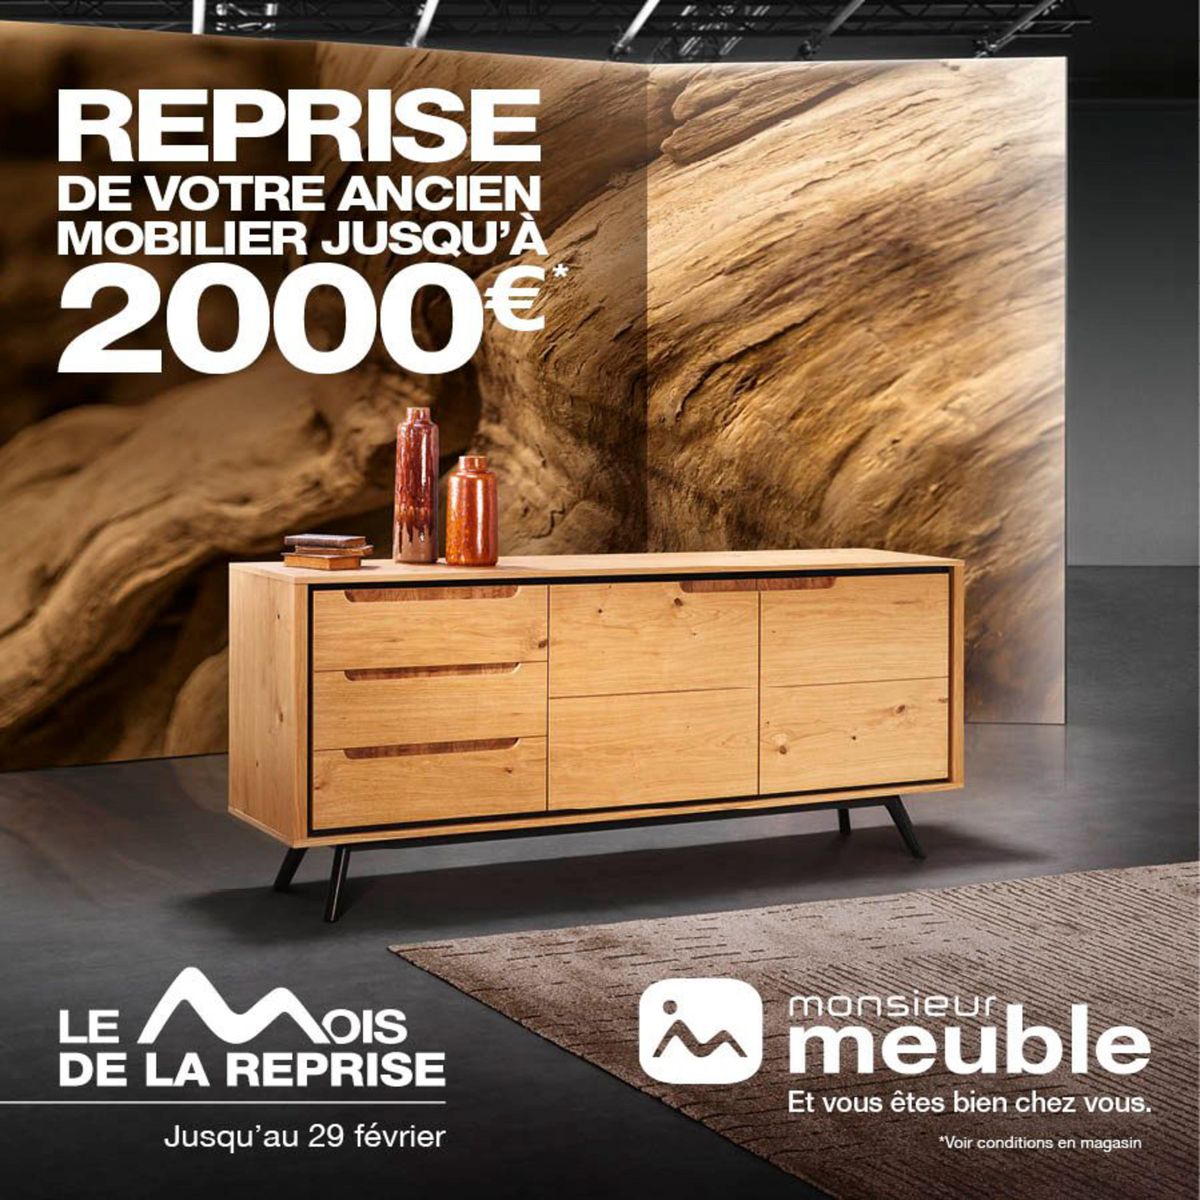 Catalogue Monsieur Meuble reprend votre ancien mobilier jusqu’à 2000€* !!!, page 00001